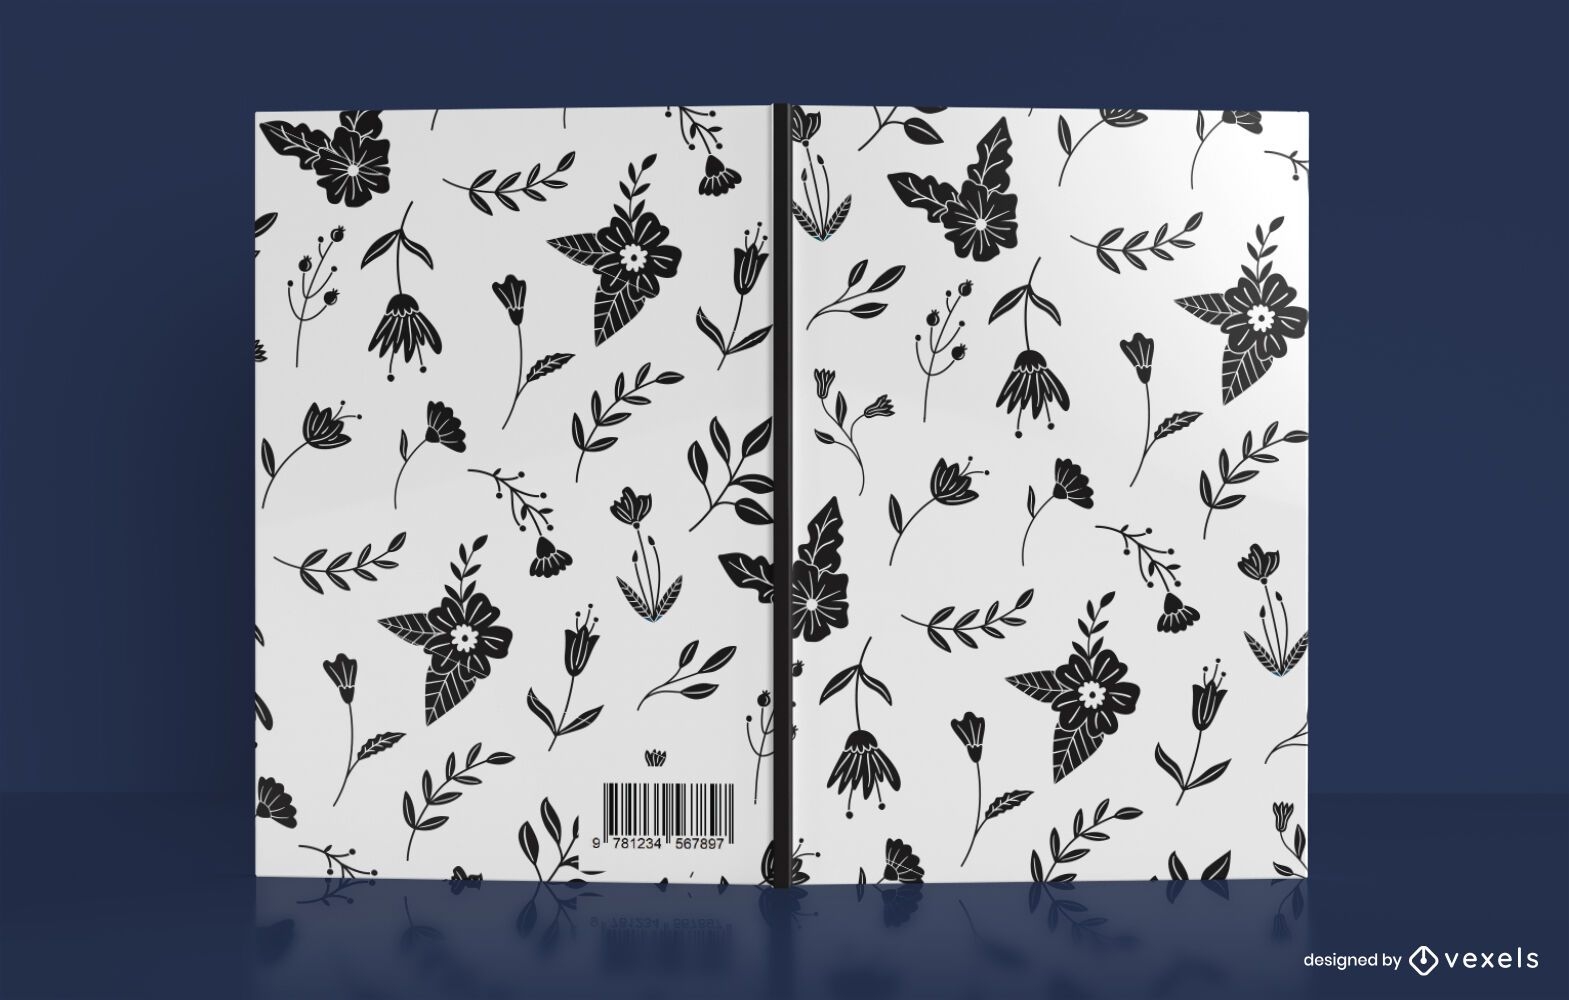 Design da capa do livro com padr?o de flor preta